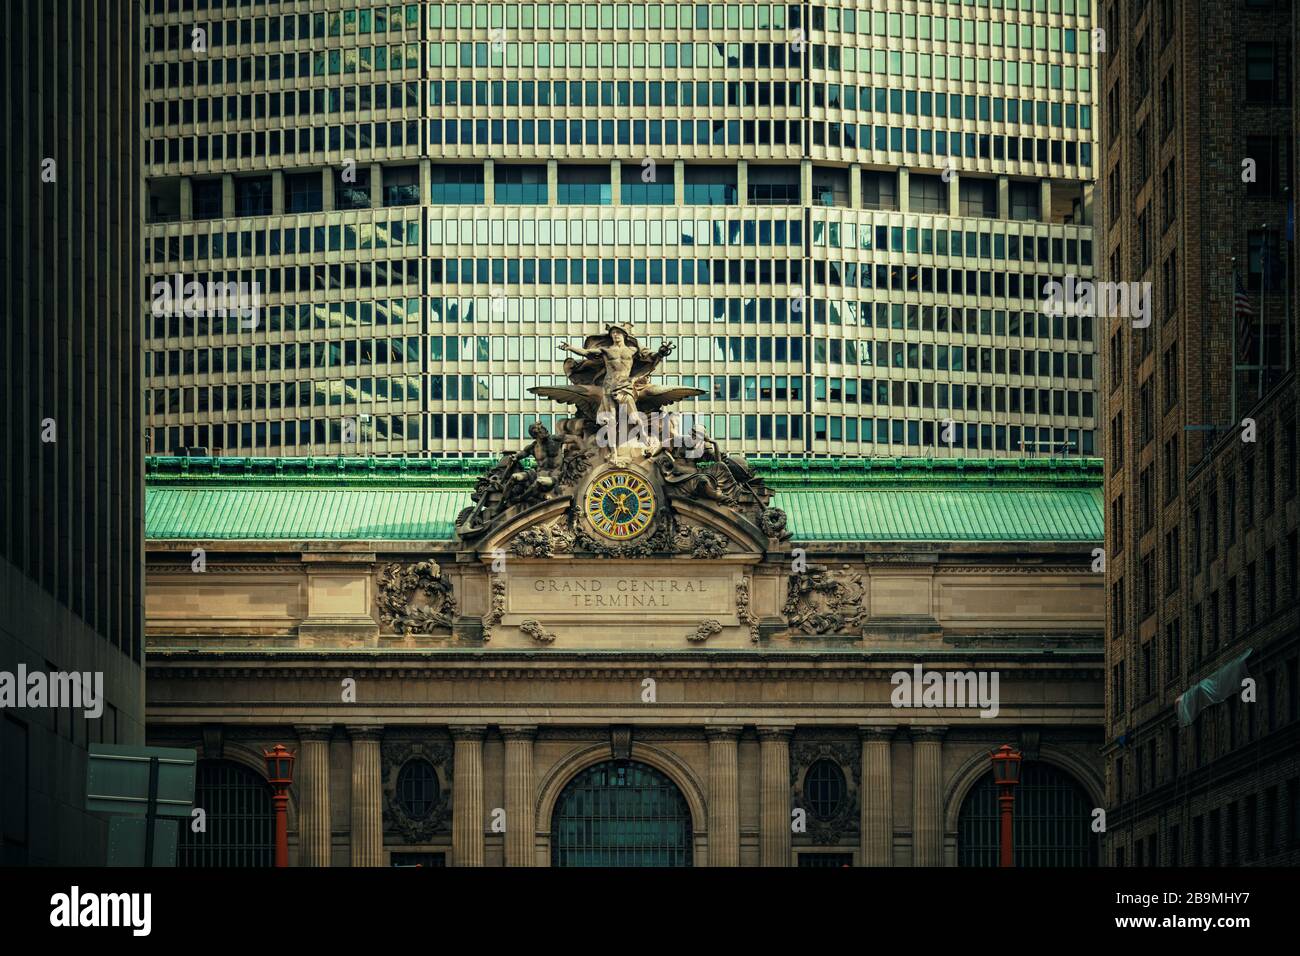 Vue rapprochée de la statue de la gare de Grand Central terminal à New York. Banque D'Images